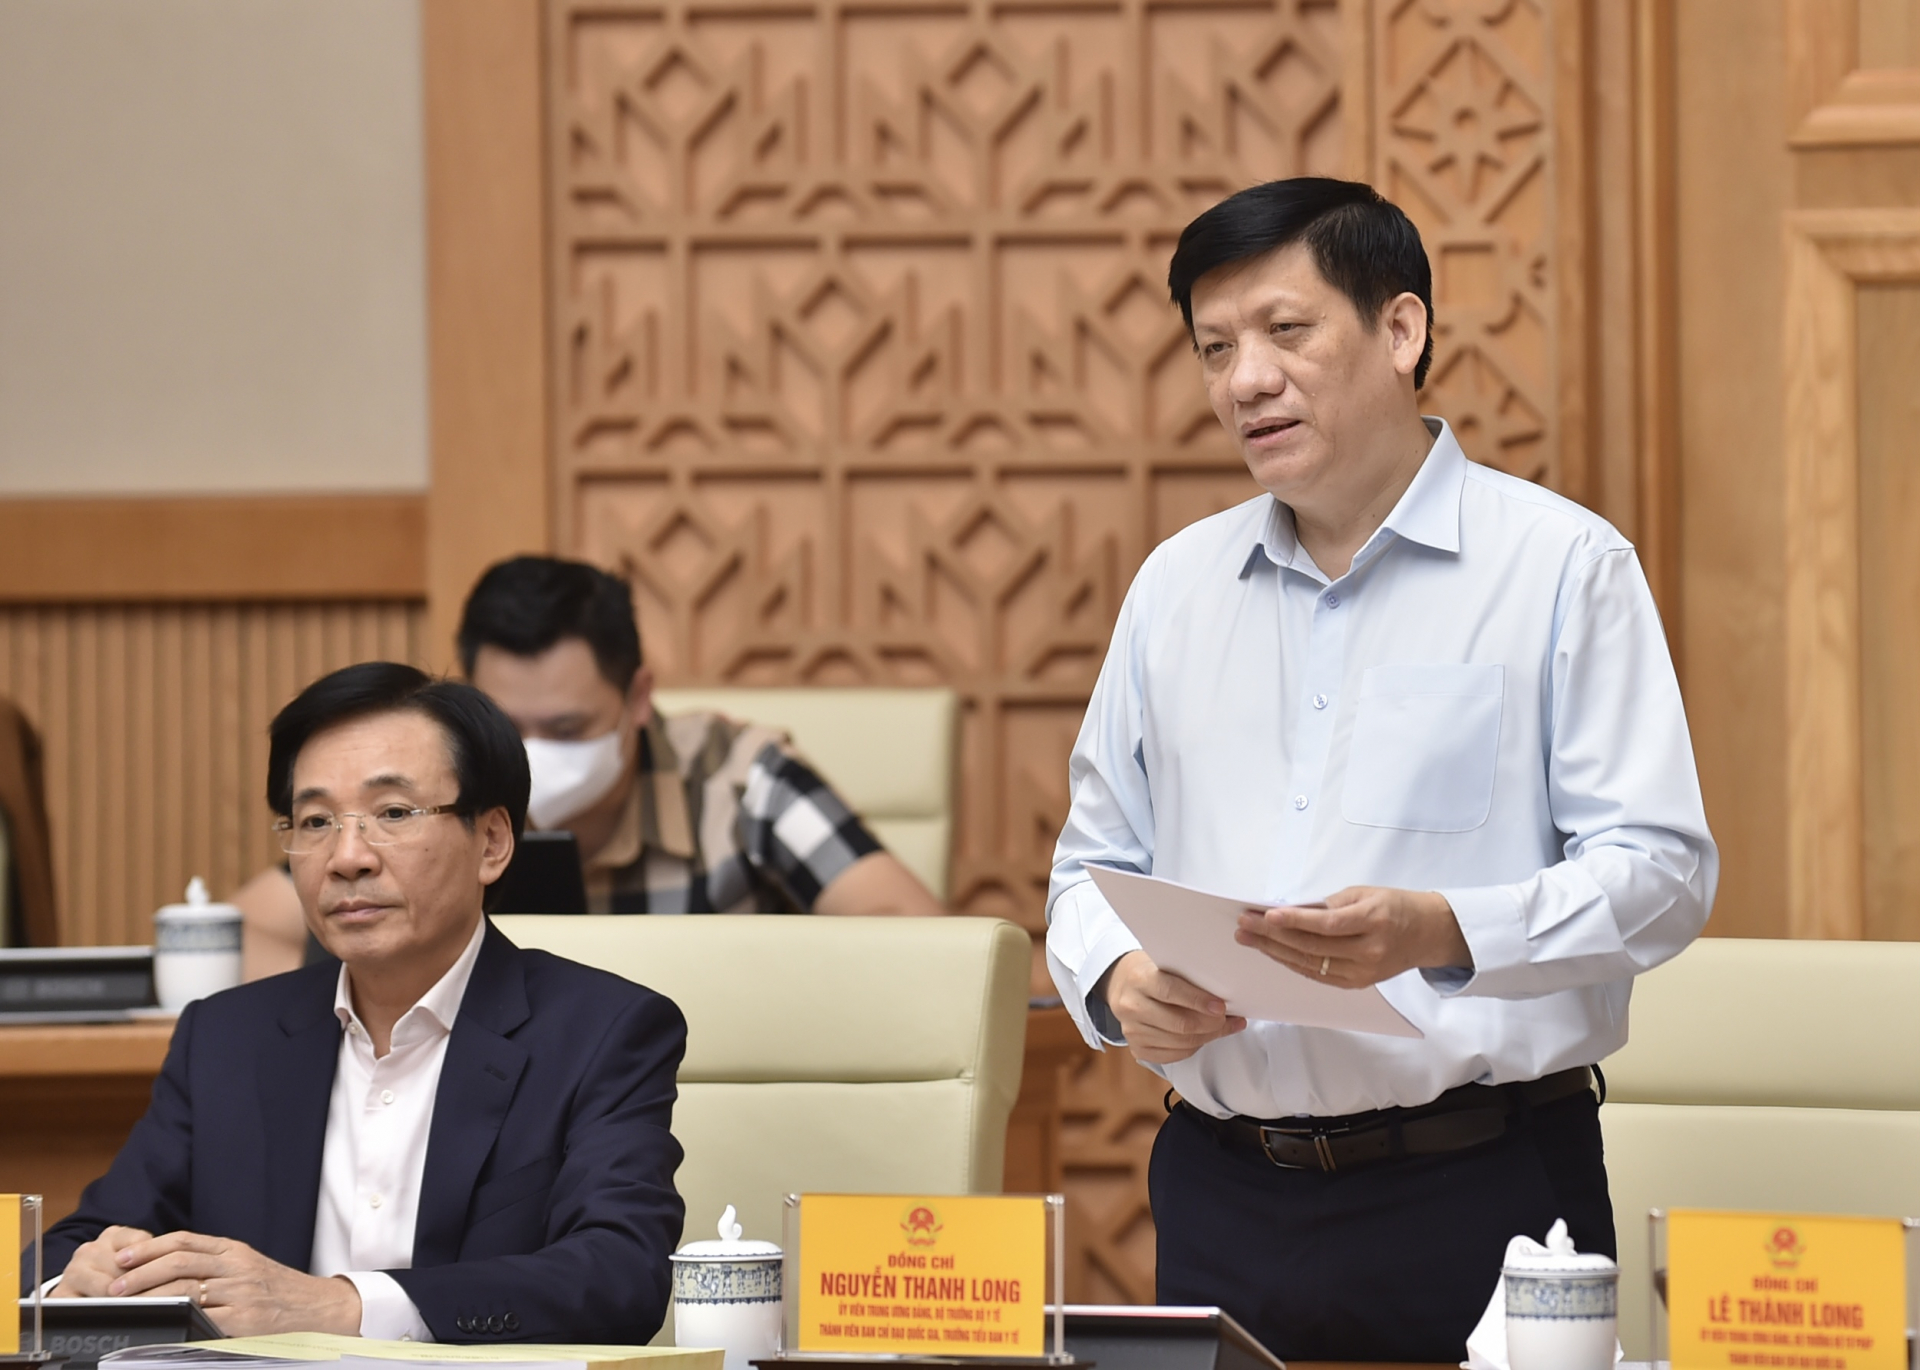 Bộ trưởng Nguyễn Thanh Long: Với kinh nghiệm bước đầu được đúc kết từ thực tiễn phòng chống dịch; năng lực ứng phó của hệ thống y tế ngày một nâng lên. 